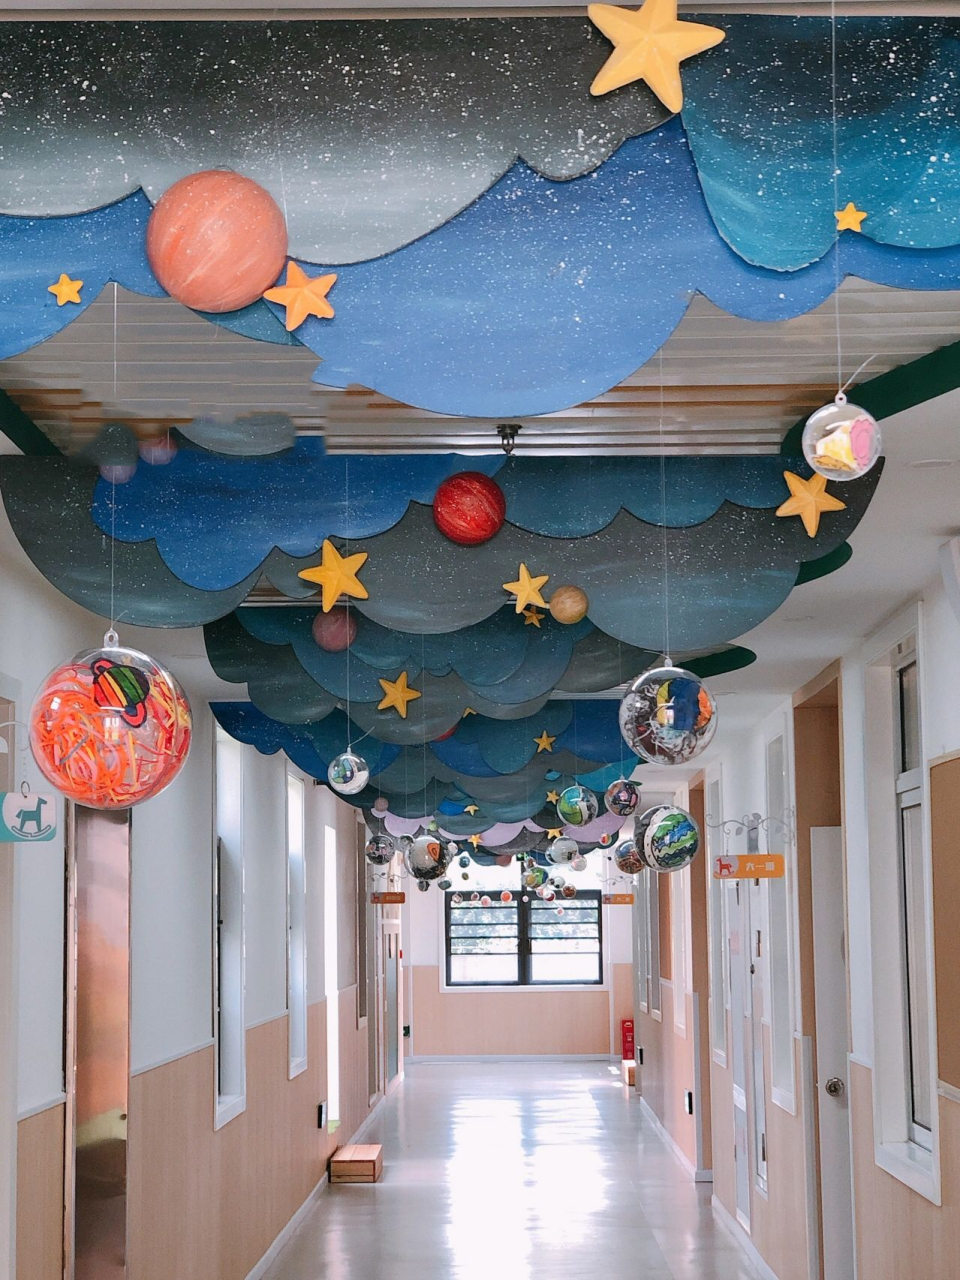 幼儿园环创之星空吊饰 亚克力球挂件 做法:用kt板涂上你喜欢的星空的